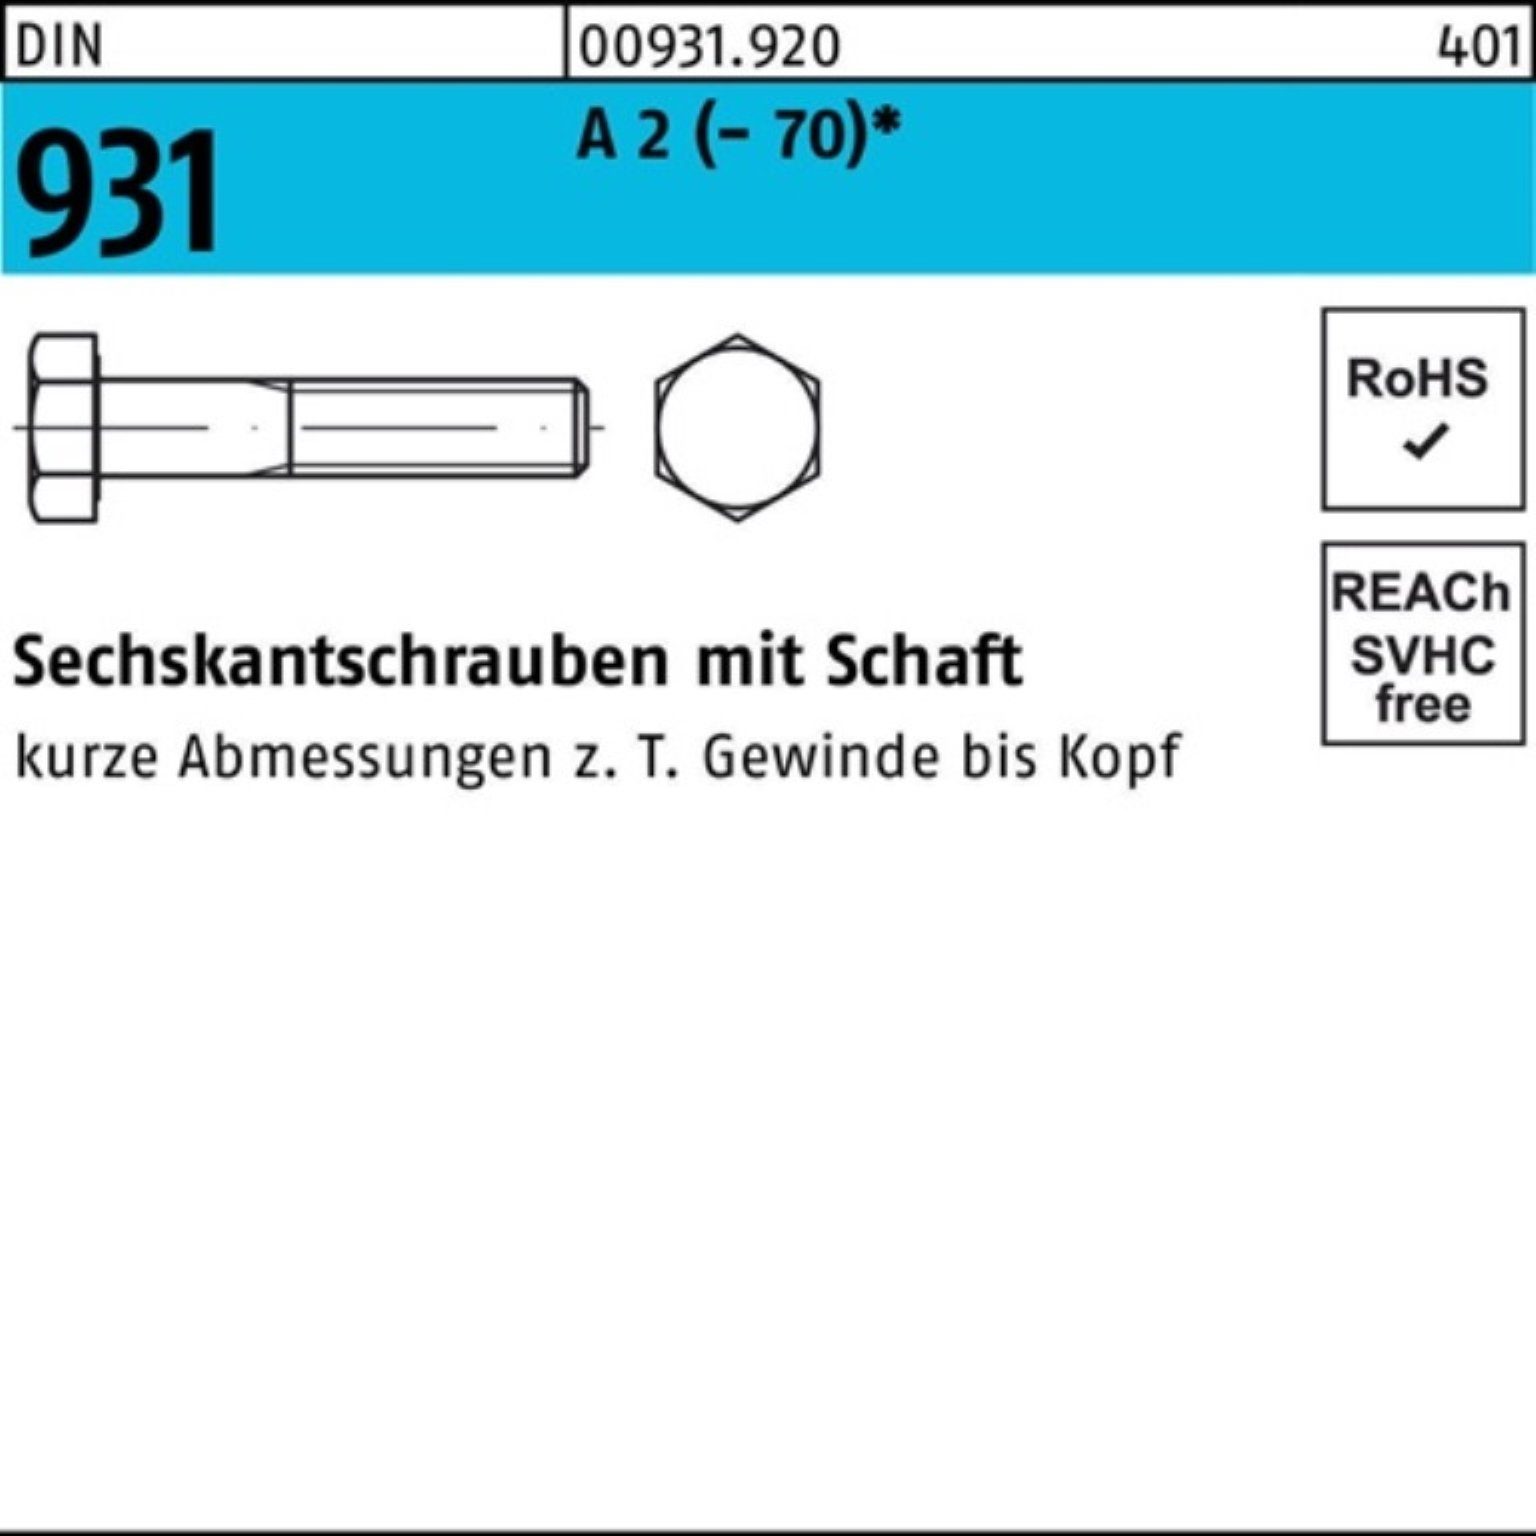 Sechskantschraube Reyher Sechskantschraube 65 1 931 DIN A 2 100er Stüc Schaft M18x (70) Pack